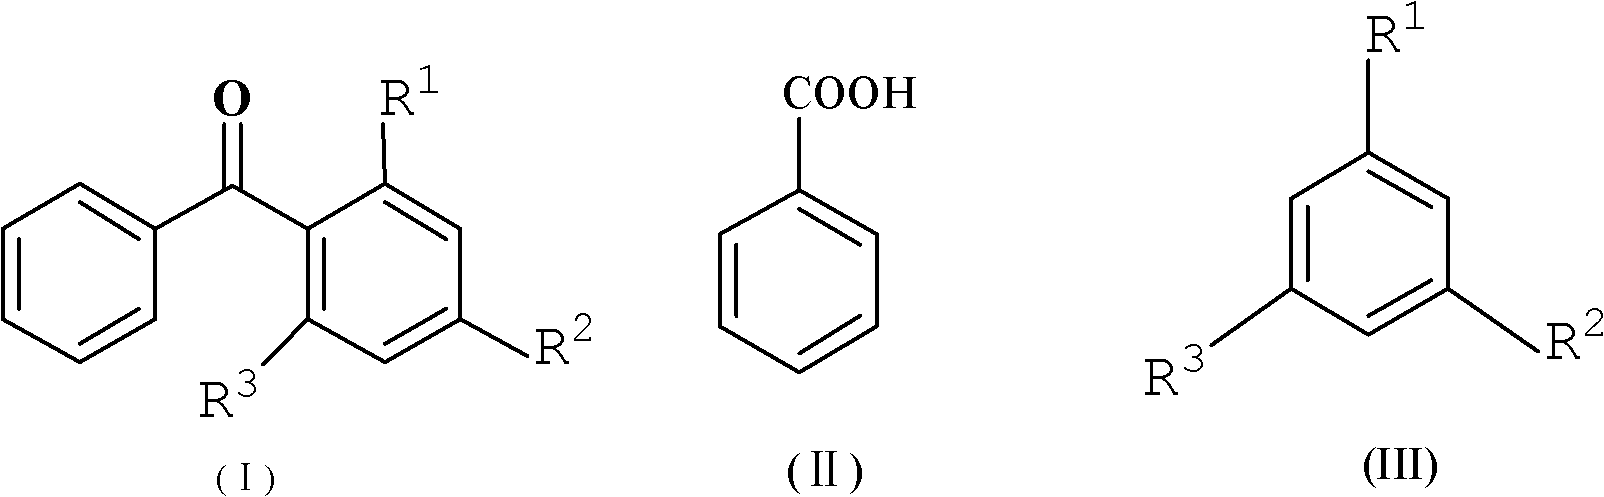 Method for synthesizing diaryl ketone compound